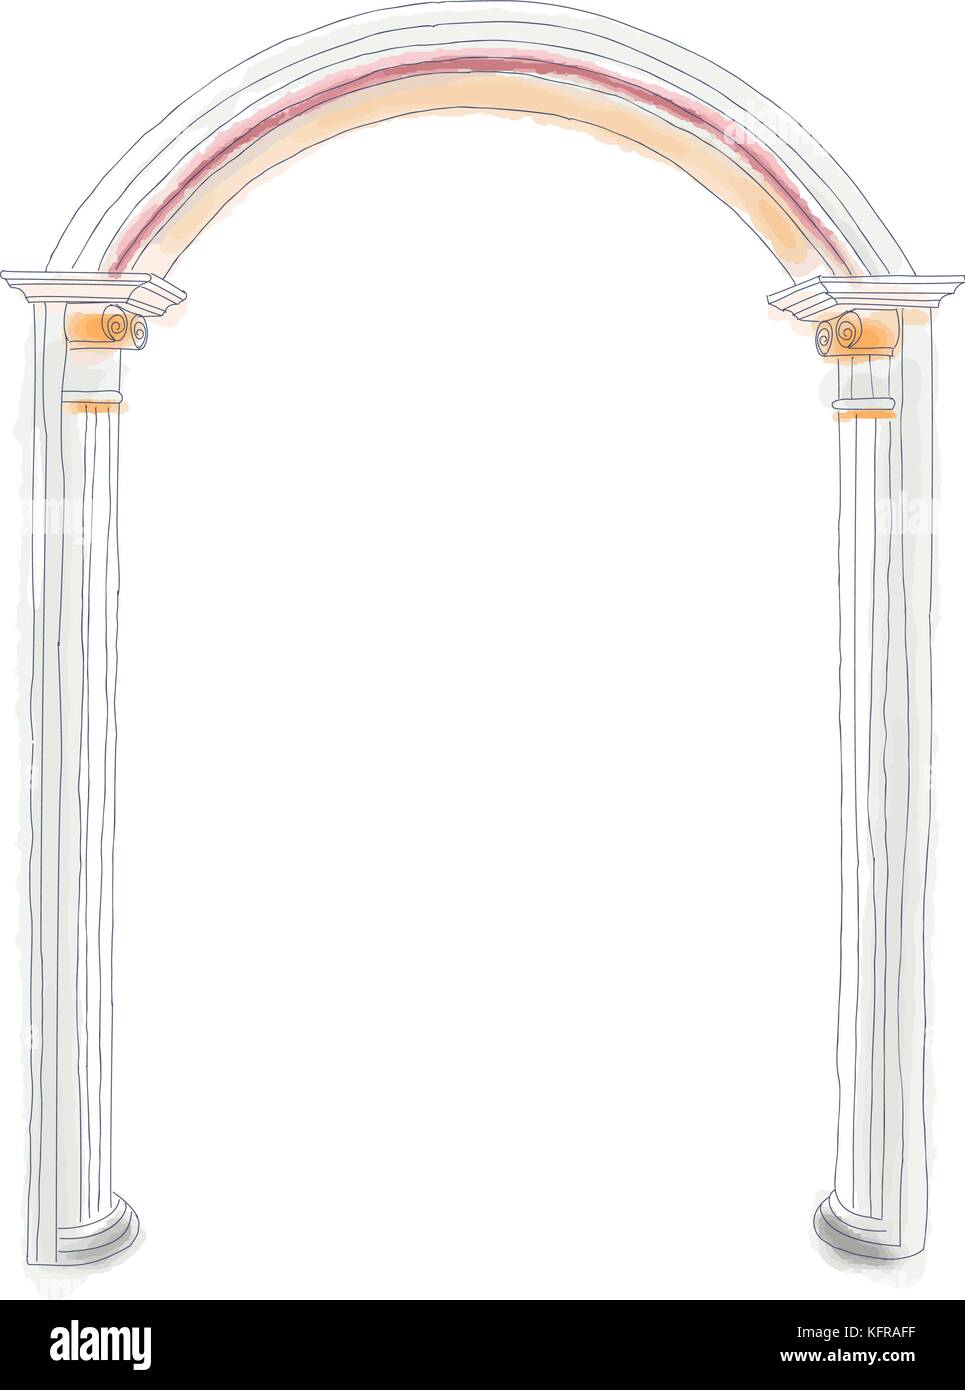 Doodle antique scetch arch illustration vectorielle stock vintage style sur fond blanc Illustration de Vecteur